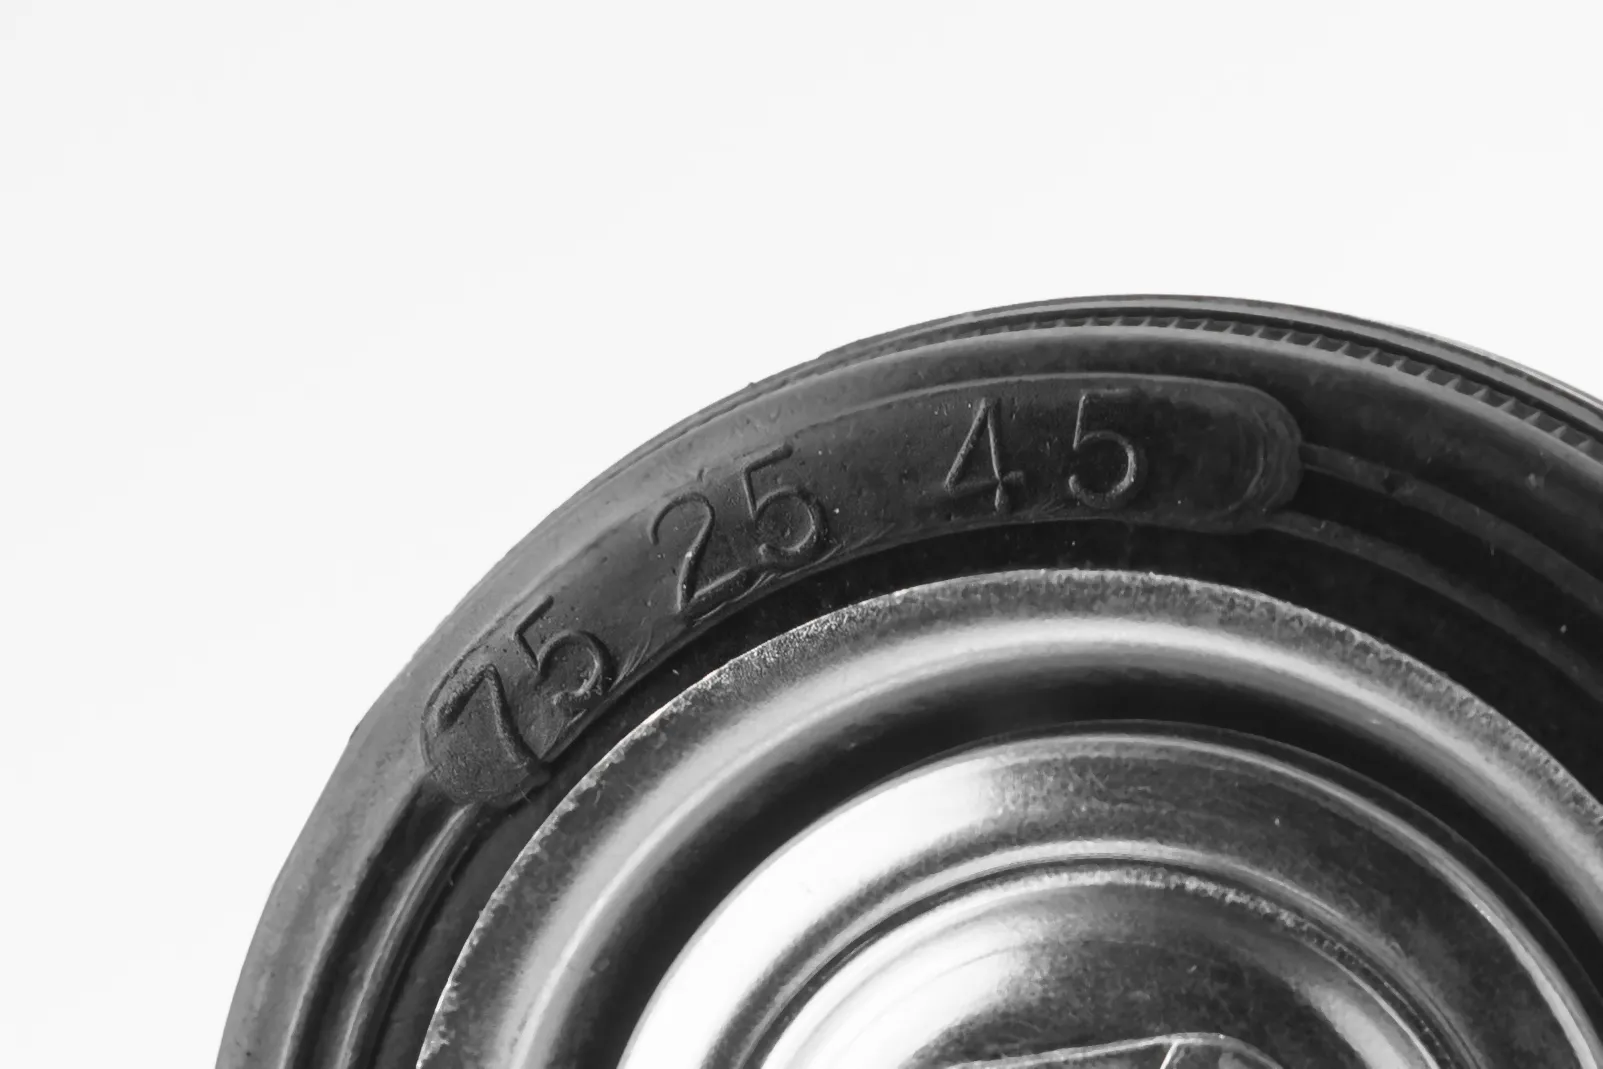 Промышленное колесо, диаметр 75мм, болтовое крепление, поворотная опора, черная резина, роликовый подшипник - SCt 93